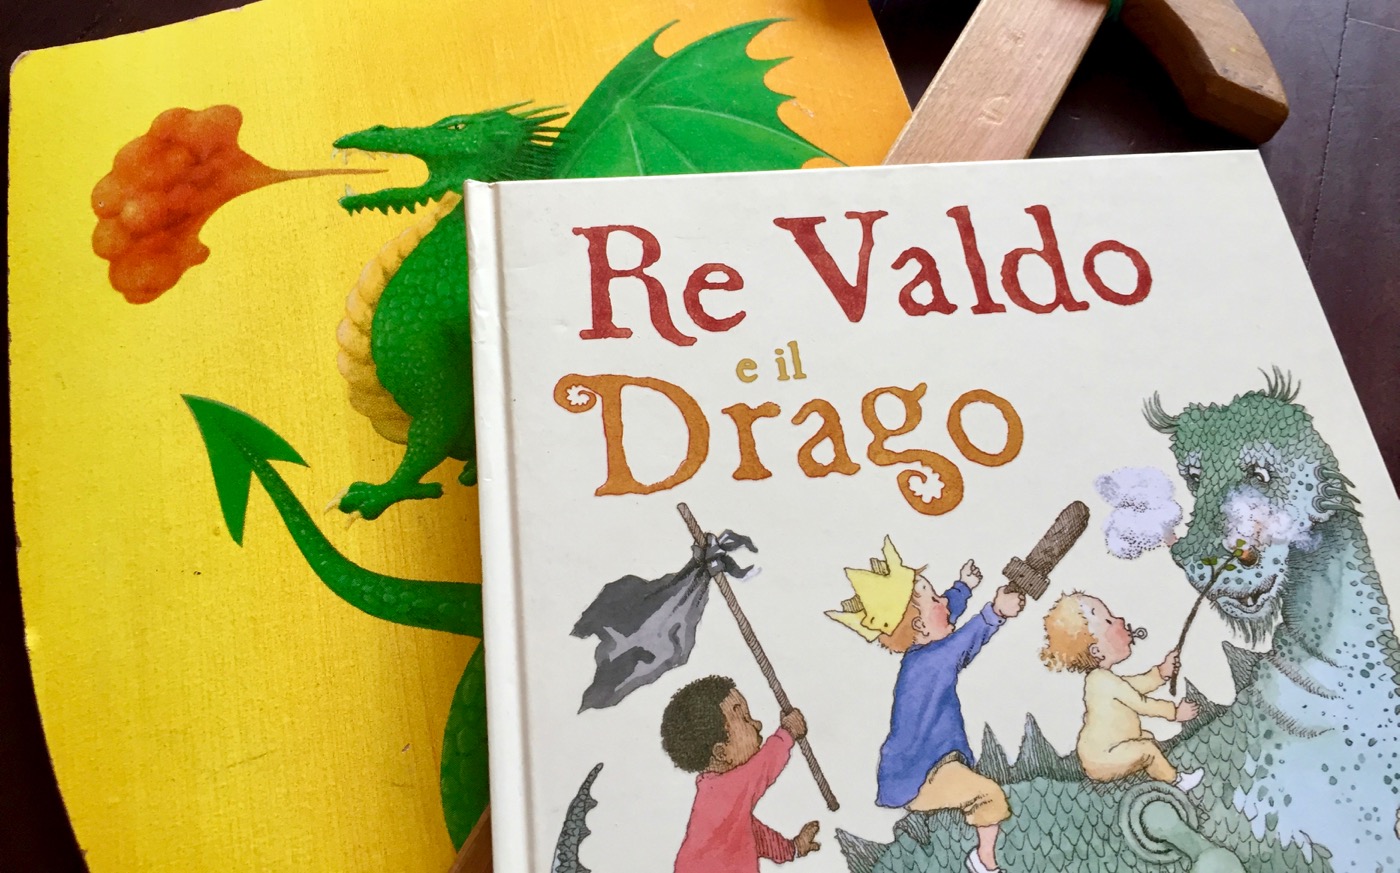 Re Valdo e il drago, ovvero una bella storia fatta di cavalieri “senza paura”